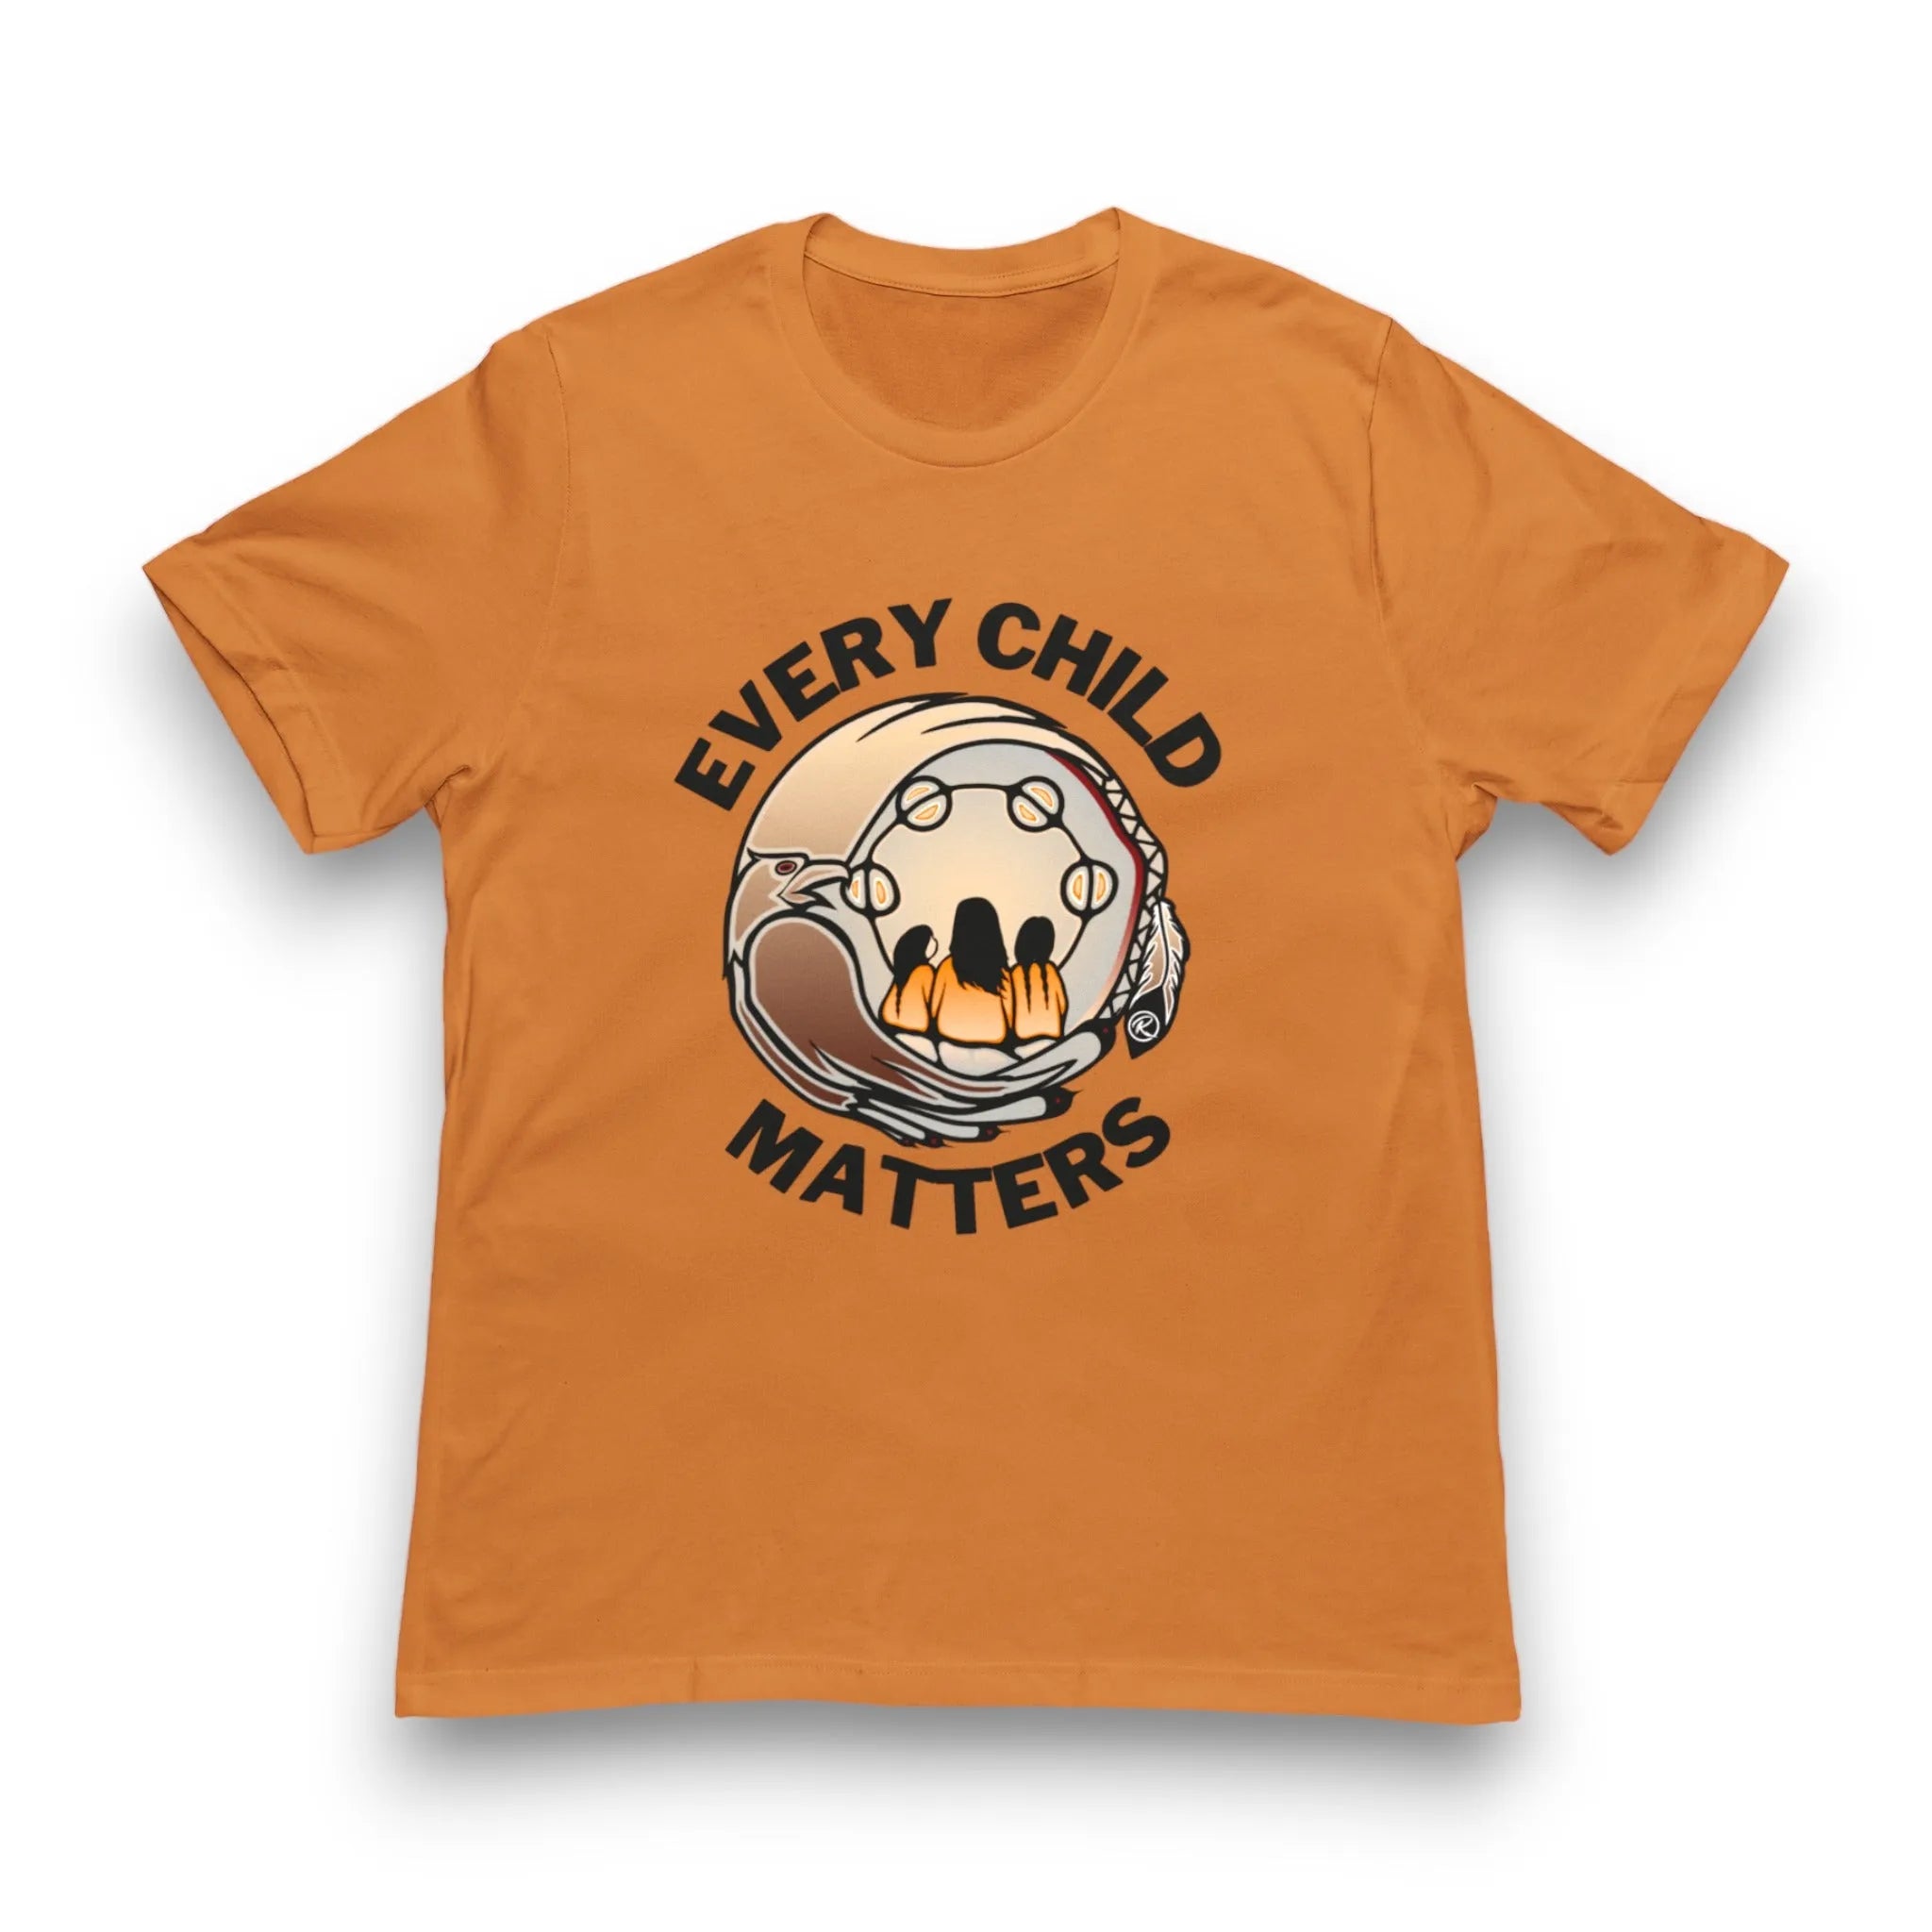 Every Child Matters 'Binesi' T-shirt